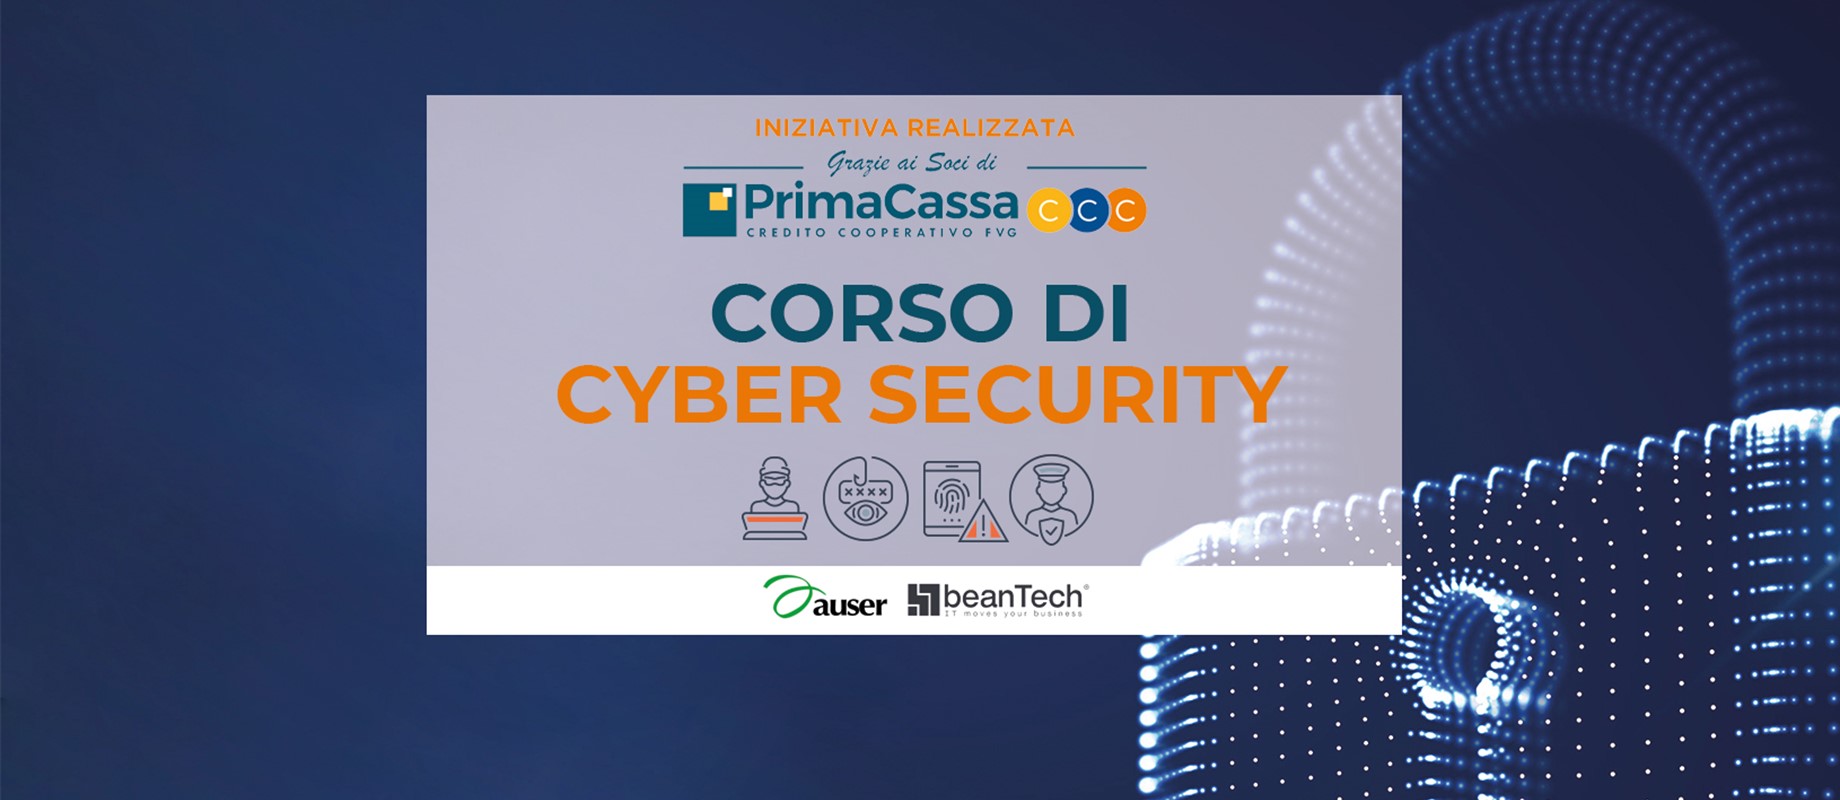 Corso di Cyber Security con PrimaCassa 